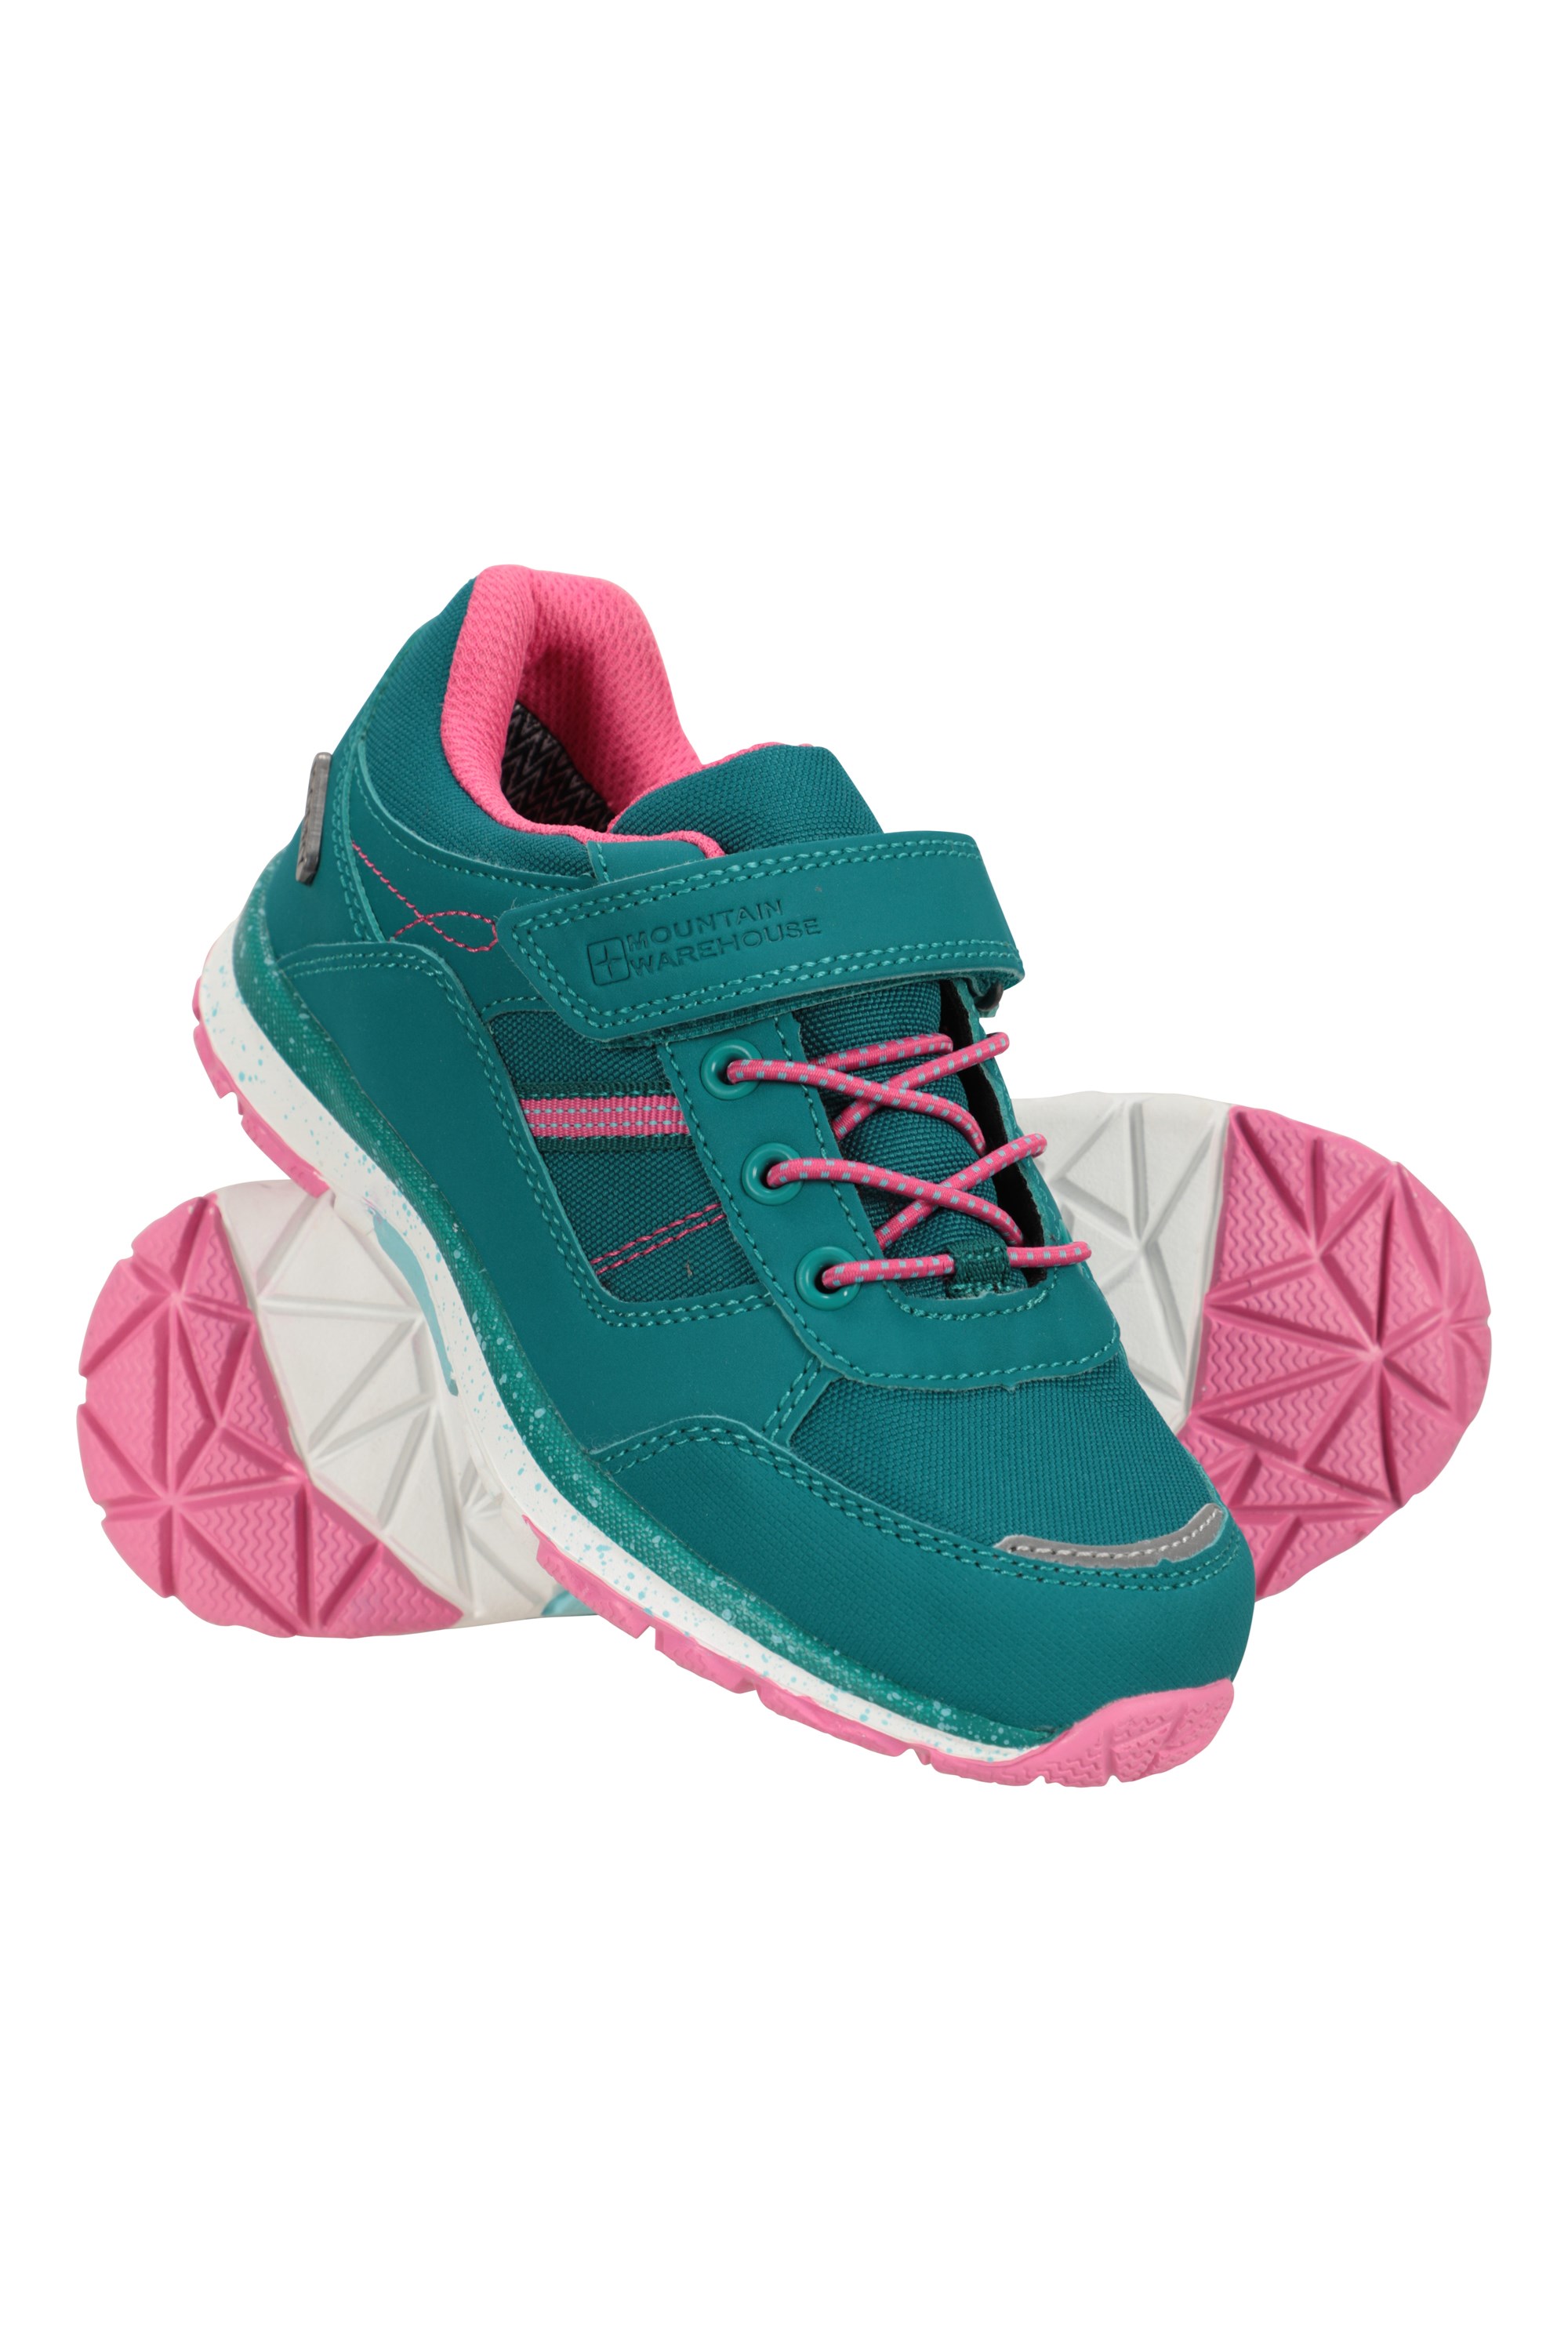 Oak Toddler Waterproof Walking Shoes - Teal